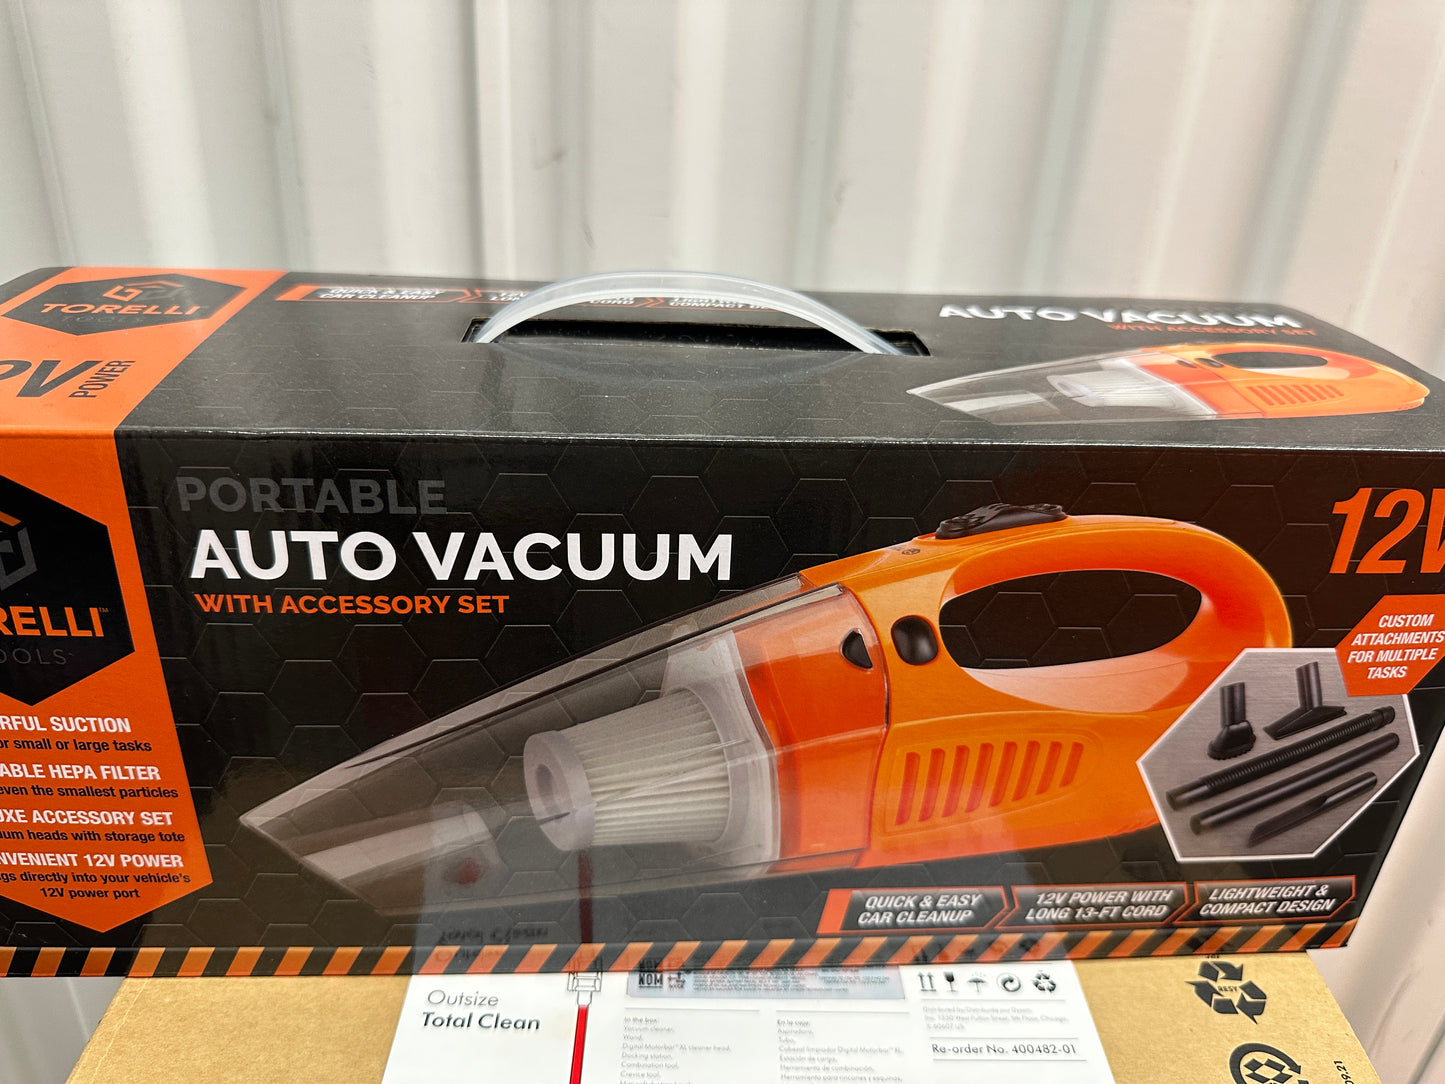 Auto vacuum